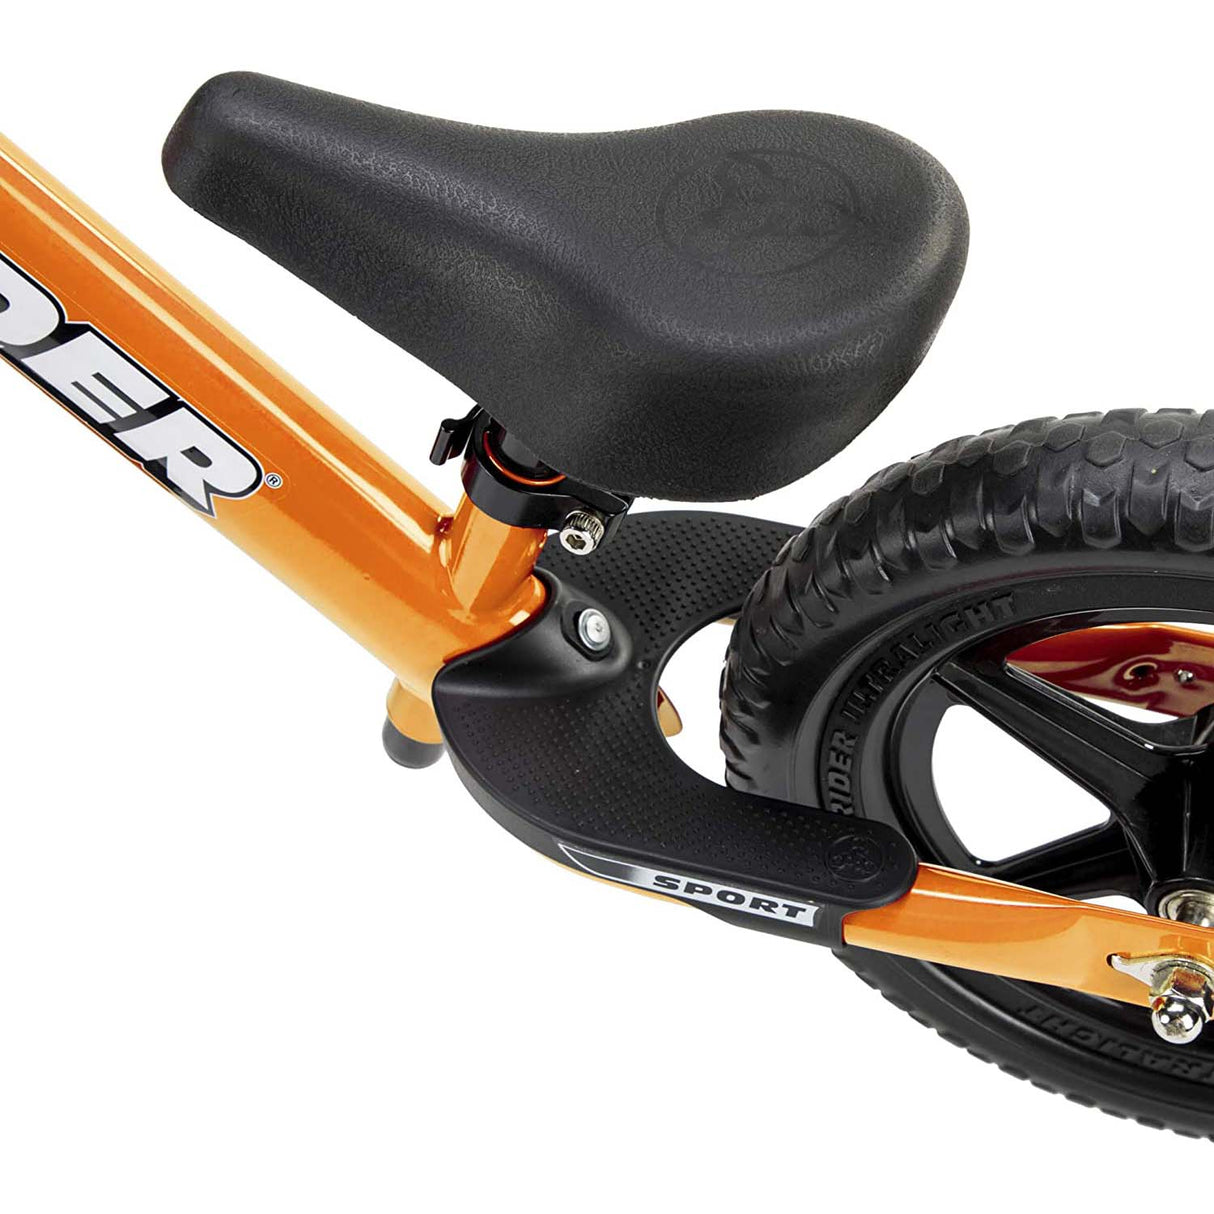 Strider 12" Sport Balance Bike - Orange